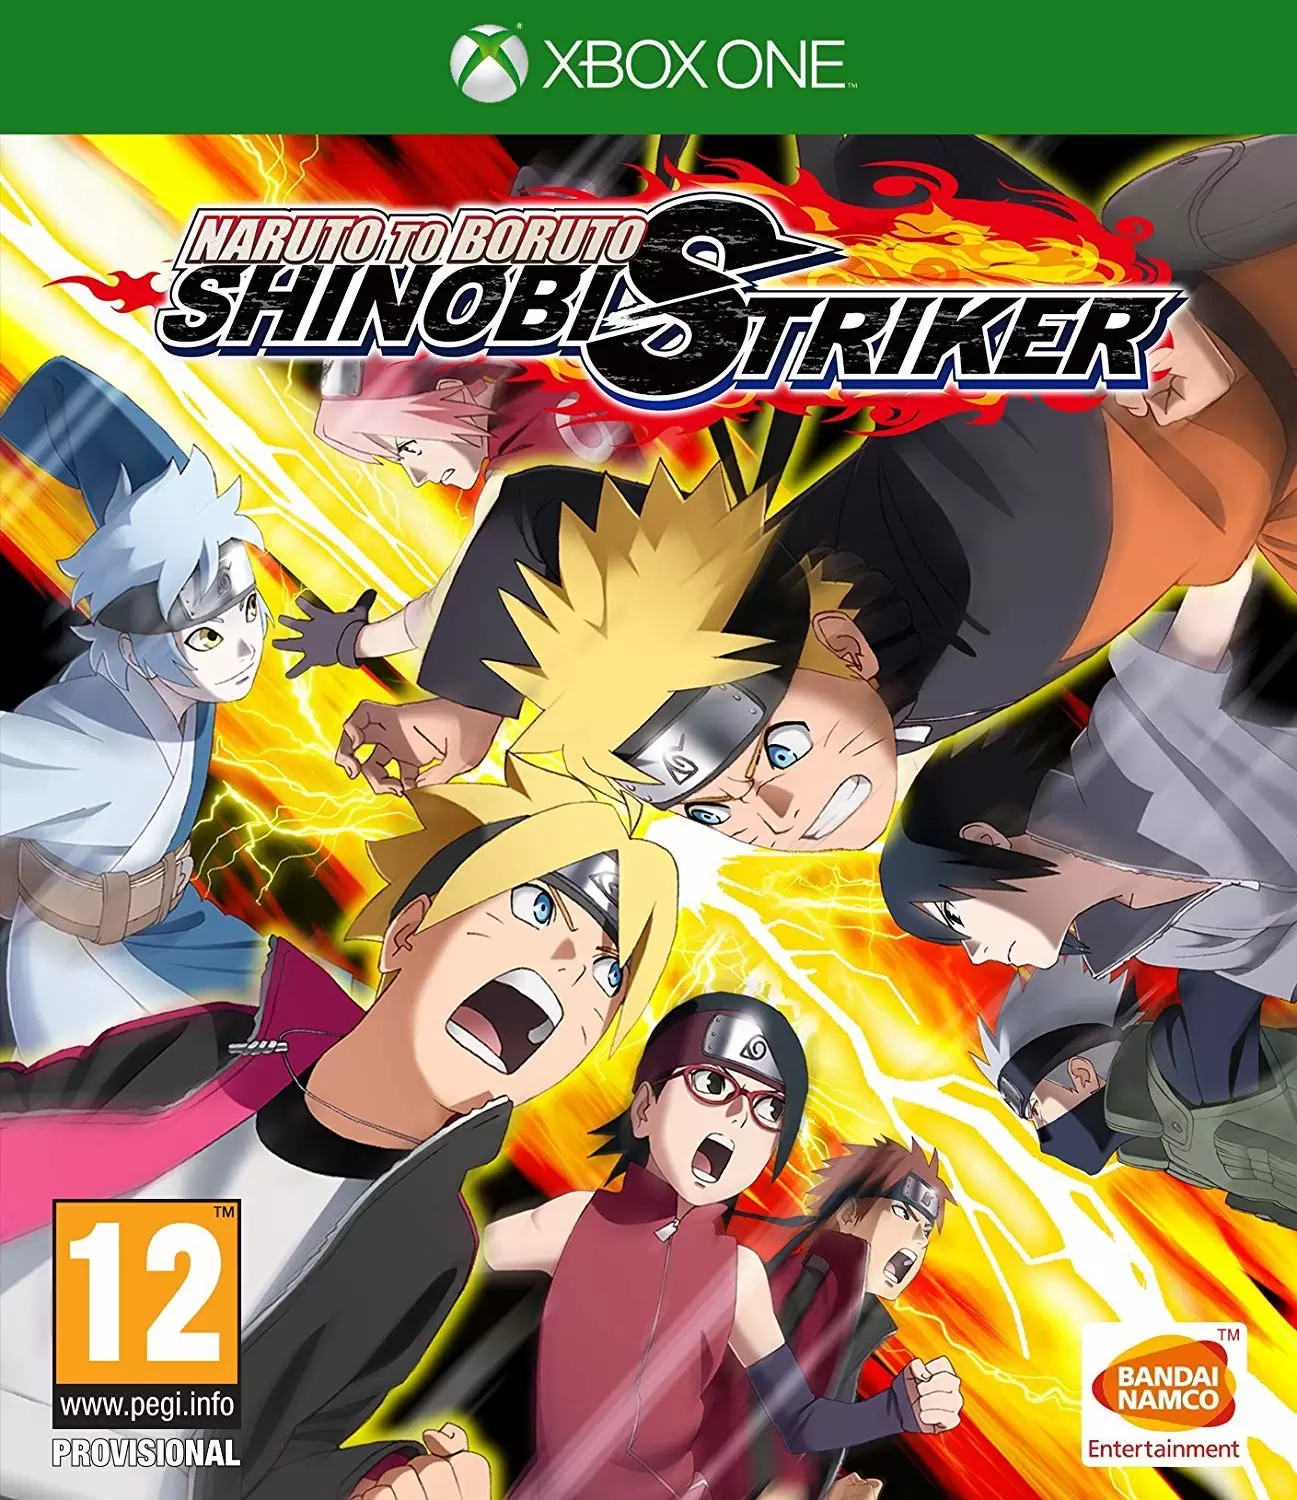 Jeux XBOX One - Naruto to Boruto: Shinobi Striker